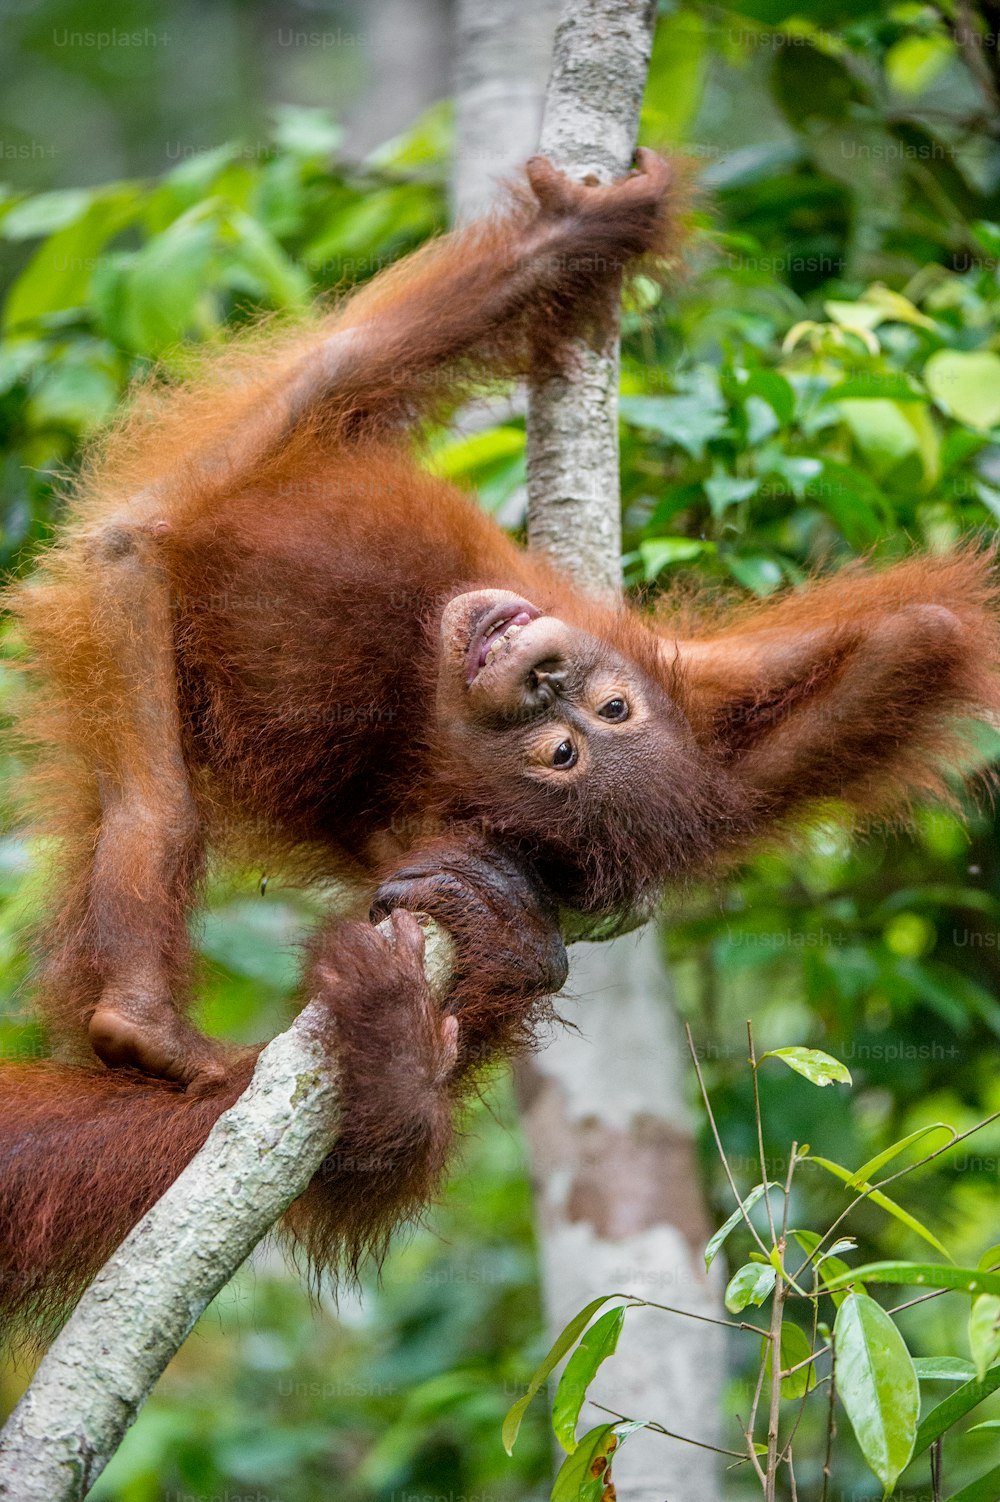 Bébé orang-outang dans un habitat naturel. Orang-outan de Bornéo (Pongo pygmaeus wurmmbii) dans la nature sauvage. Forêt tropicale de l’île de Bornéo. Indonésie.